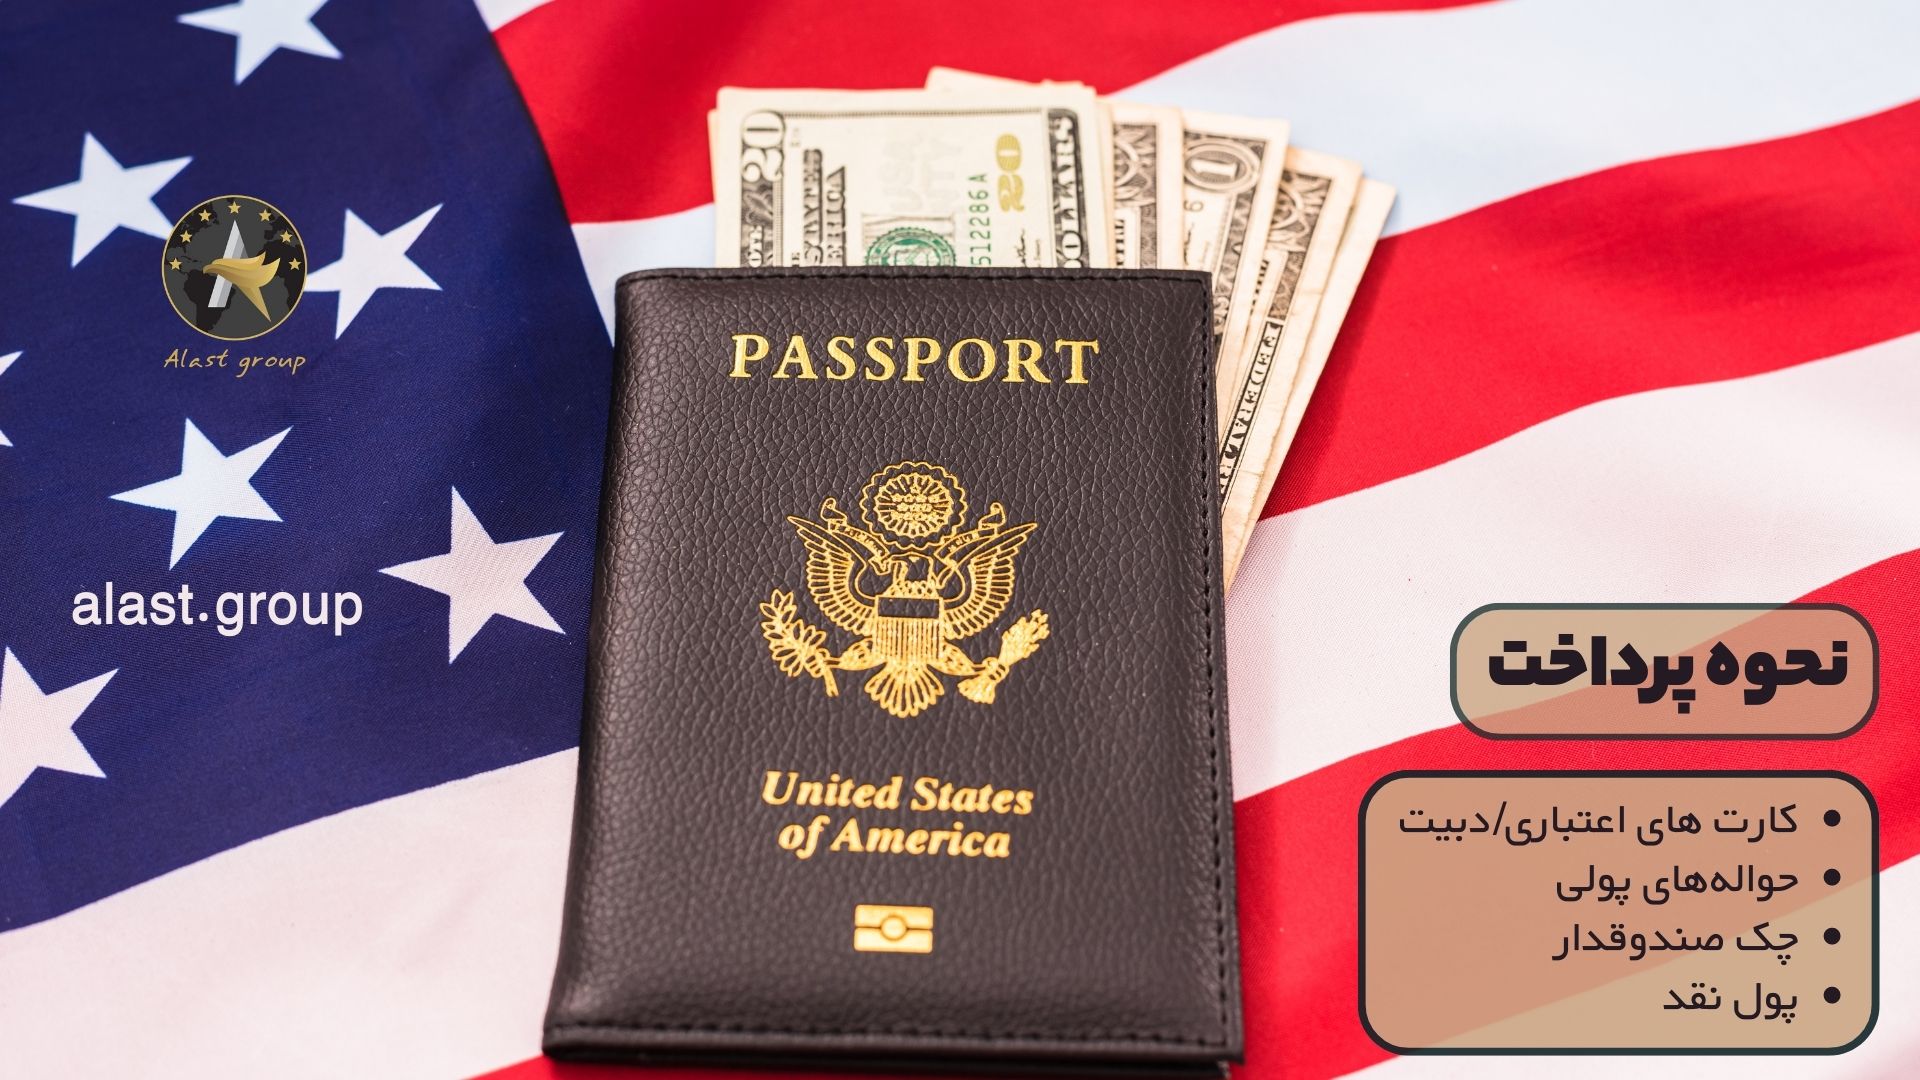 نحوه پرداخت هزینه تمدید گذرنامه ایرانی در آمریکا